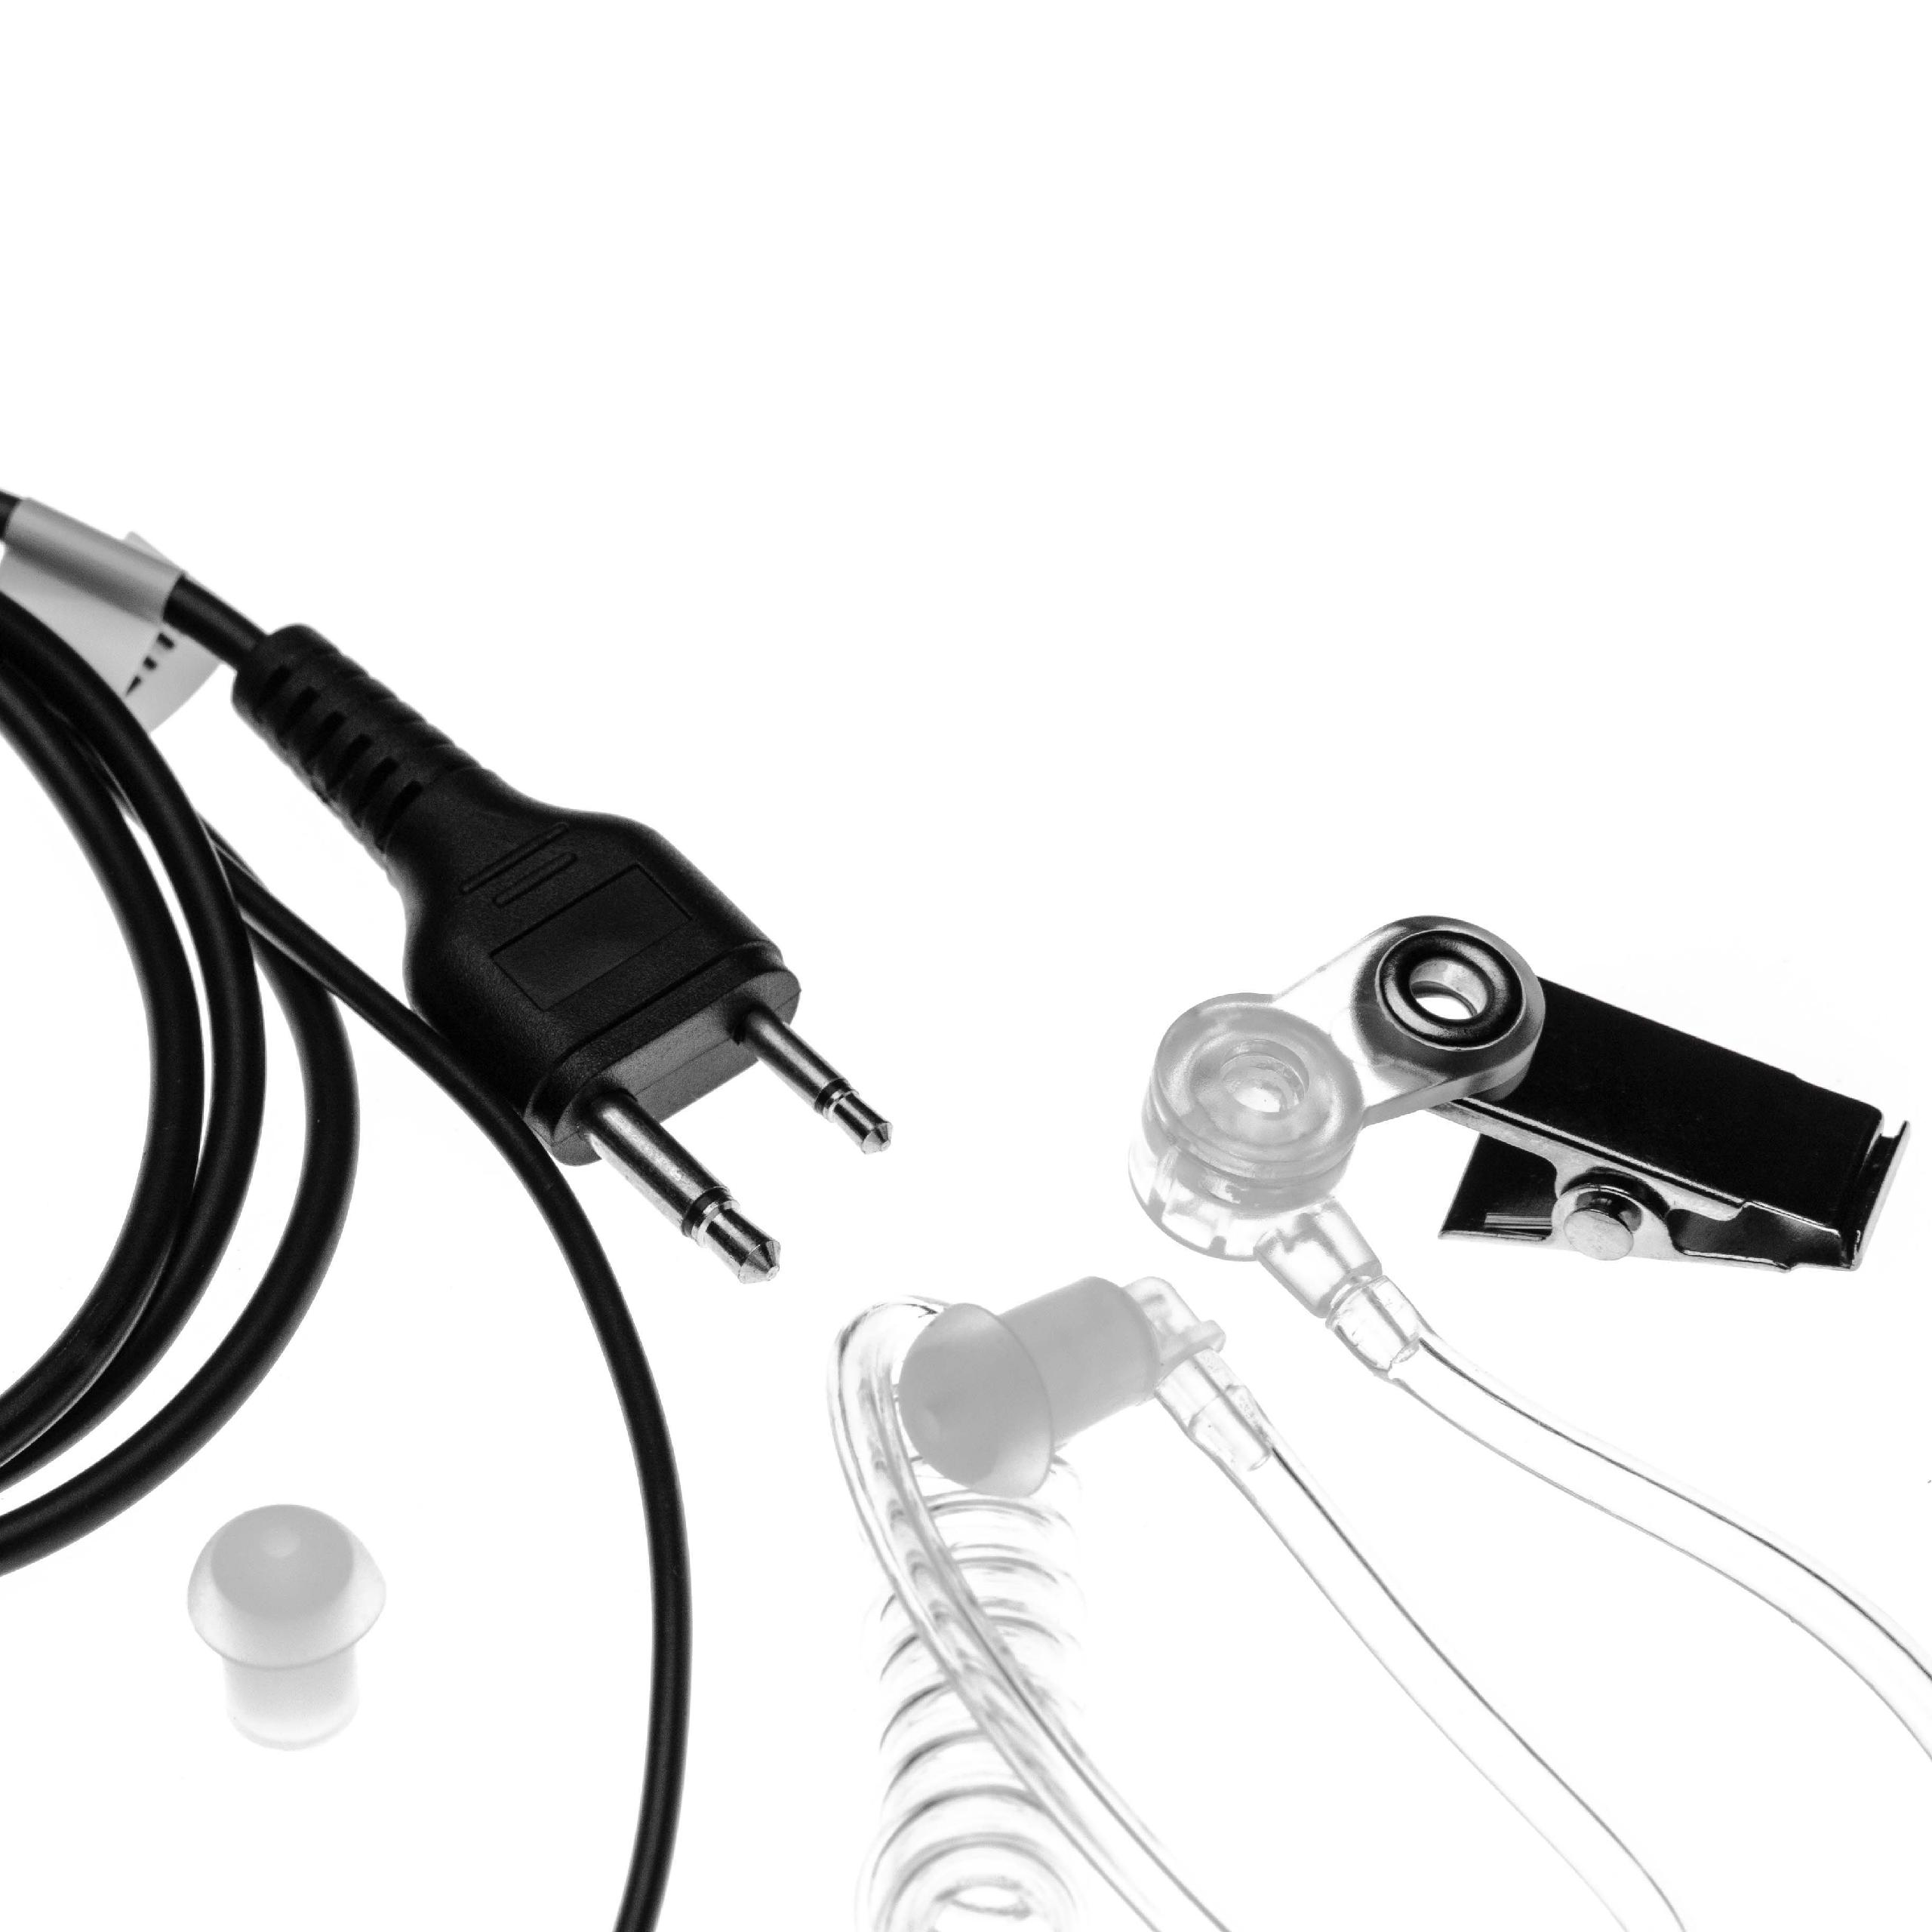 Auriculares para transceptor Icom IC-24AT + micrófono push-to-talk + soporte clip + tubo acústico transparente